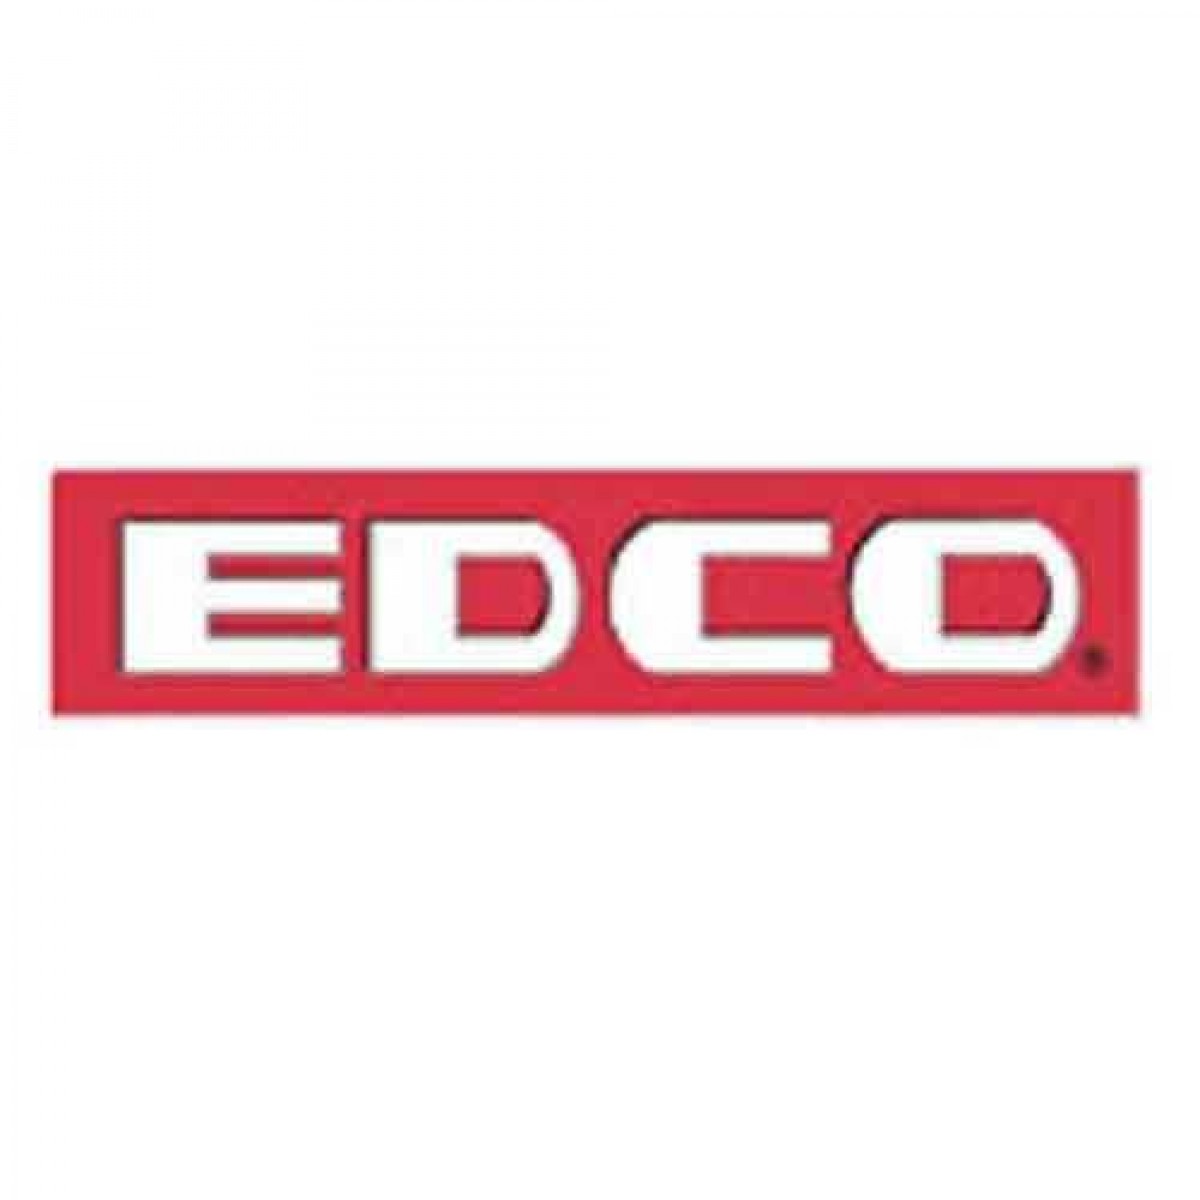 edco floor grinder instructions